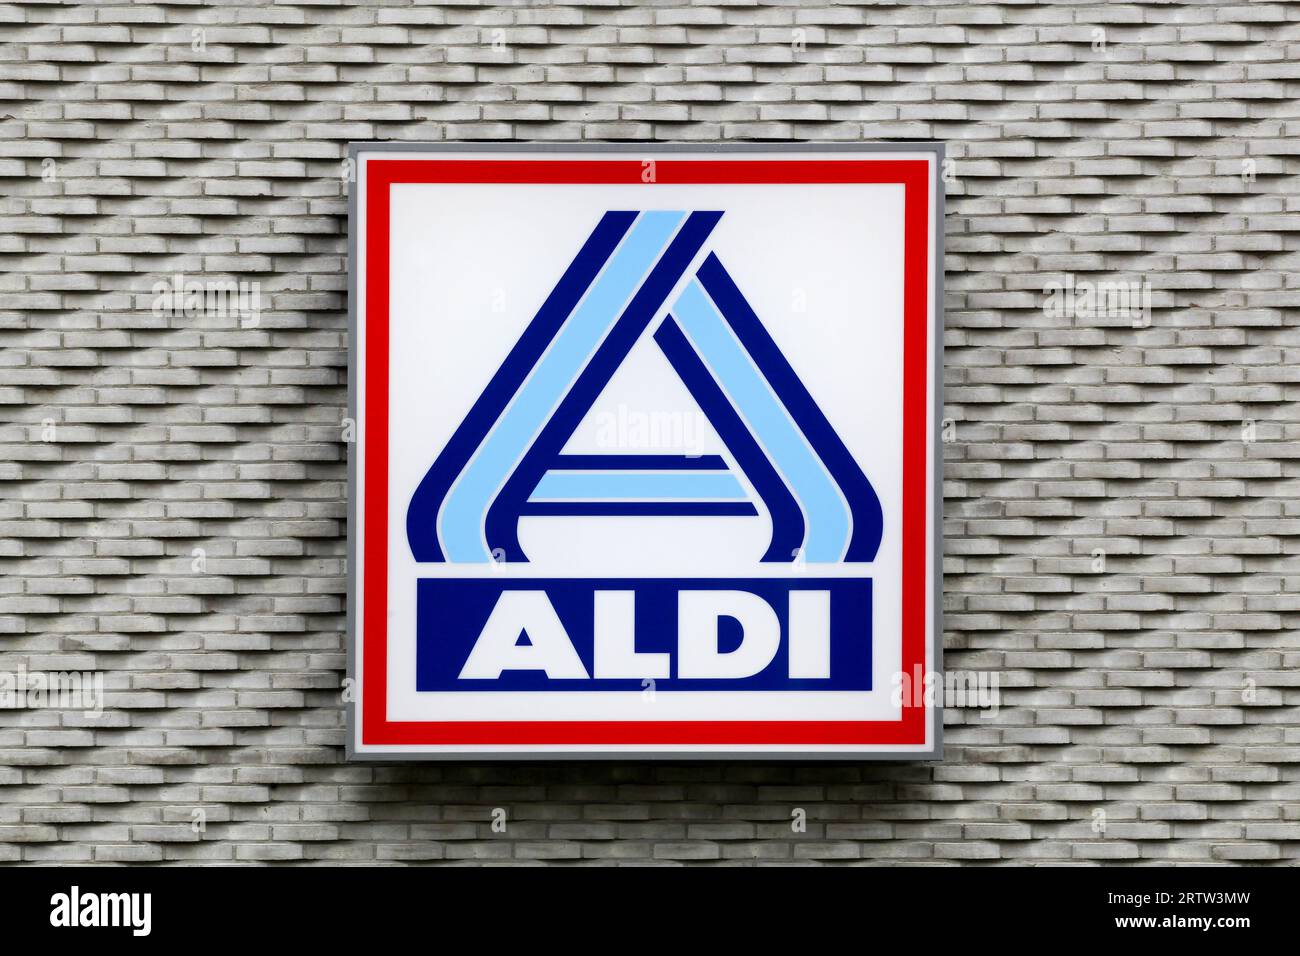 Aldi-Logo an der Wand. Aldi ist eine führende globale Discount-Supermarktkette mit über 10 000 Geschäften in 18 Ländern Stockfoto